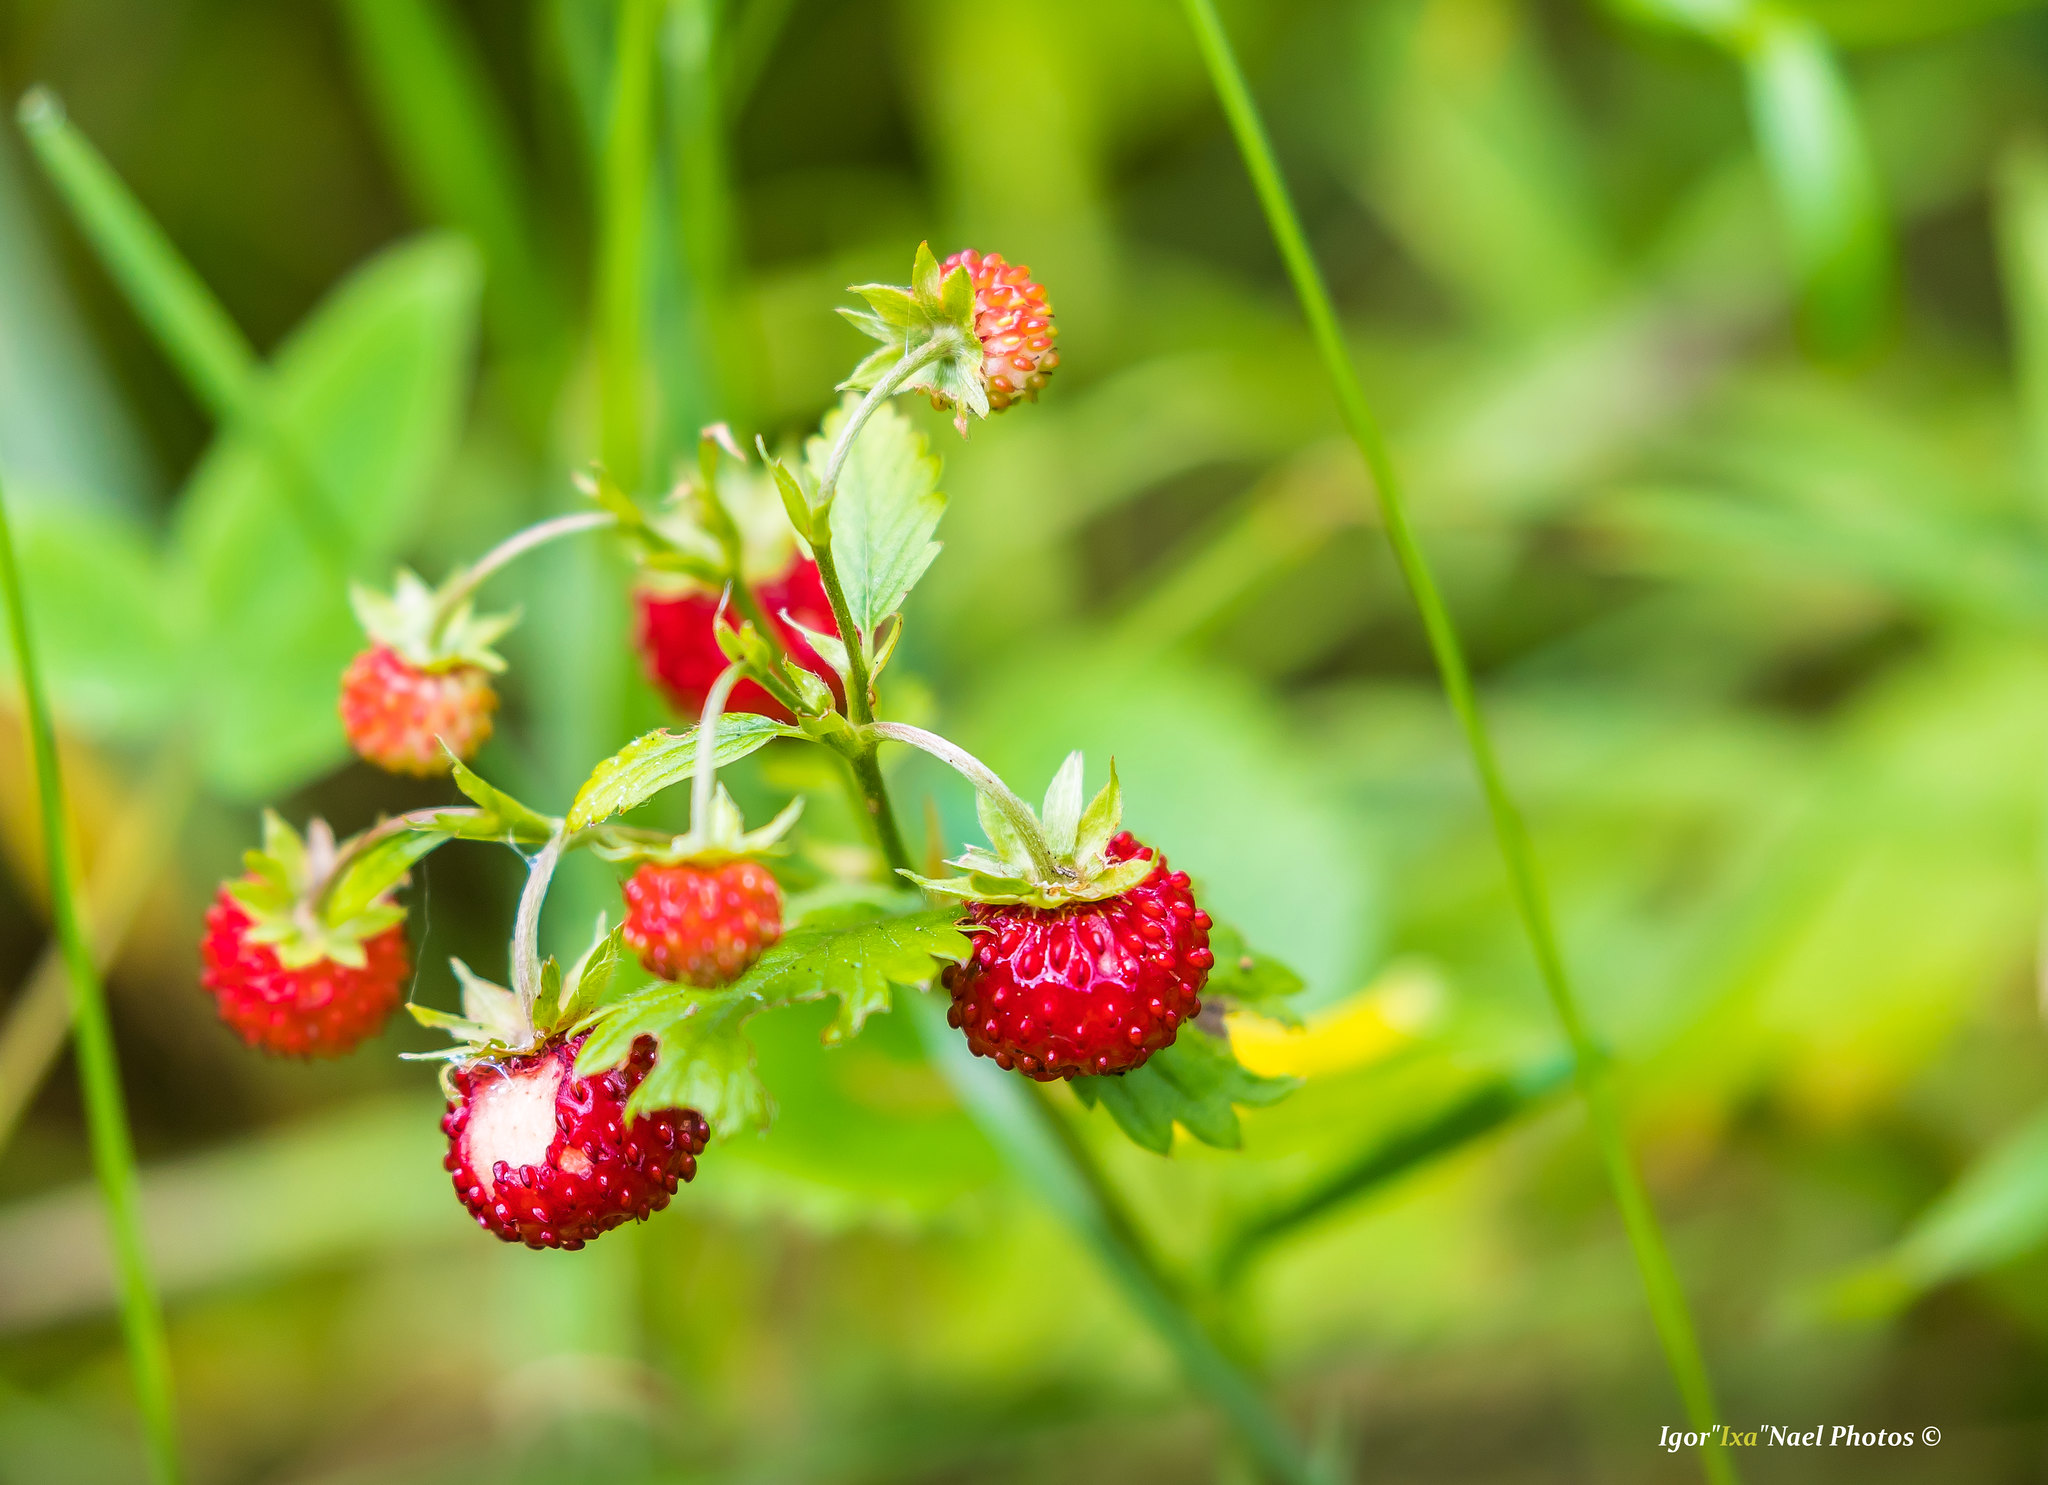 Wild strawberry. By: Igor Nael